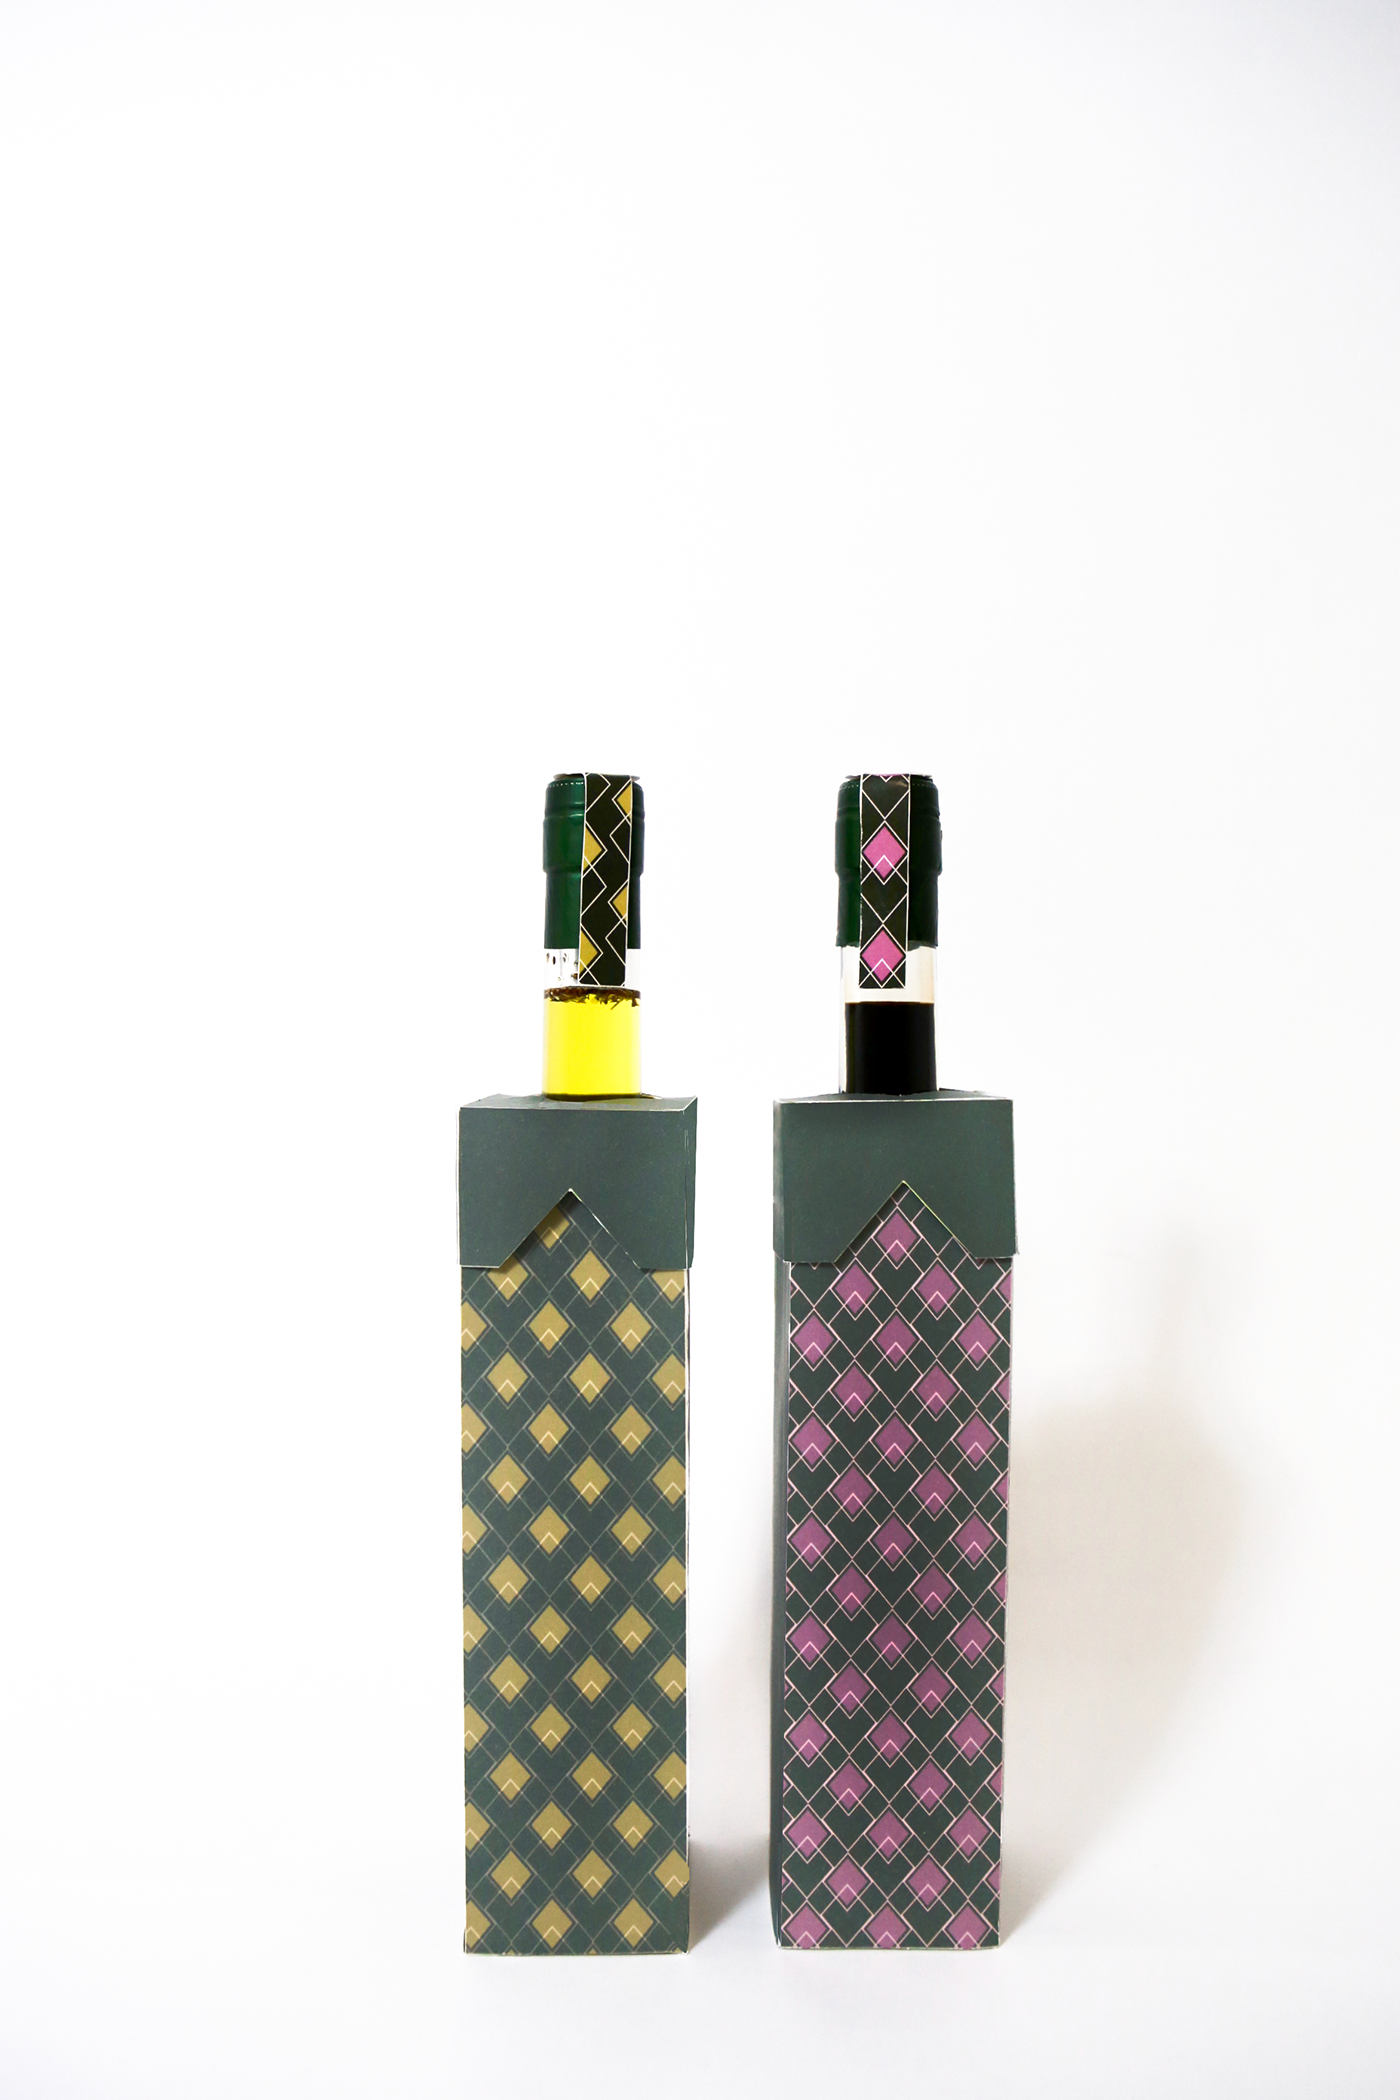 Olive Oil balsamic vinegar Packaging design